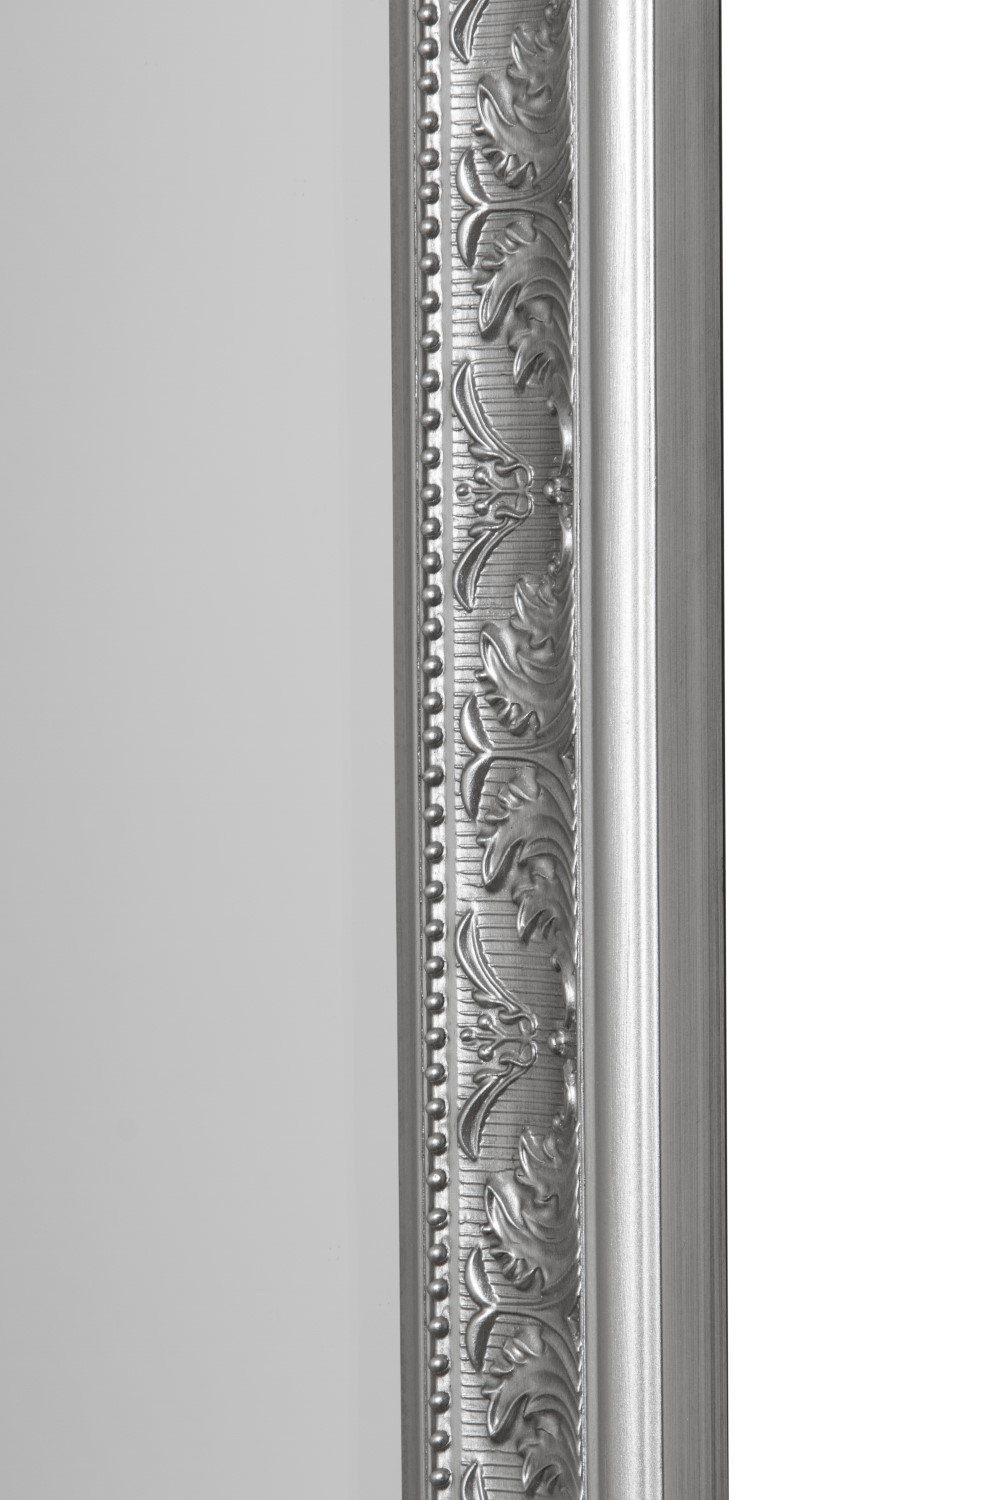 - Spiegel: cm Wandspiegel Spiegel Ankleidespiegel Barock Facettenschliff Barock Antik 62x52x7 Ganzkörperspiegel, Rahmen Stil mit silber elbmöbel Wandspiegel Wandspiegel